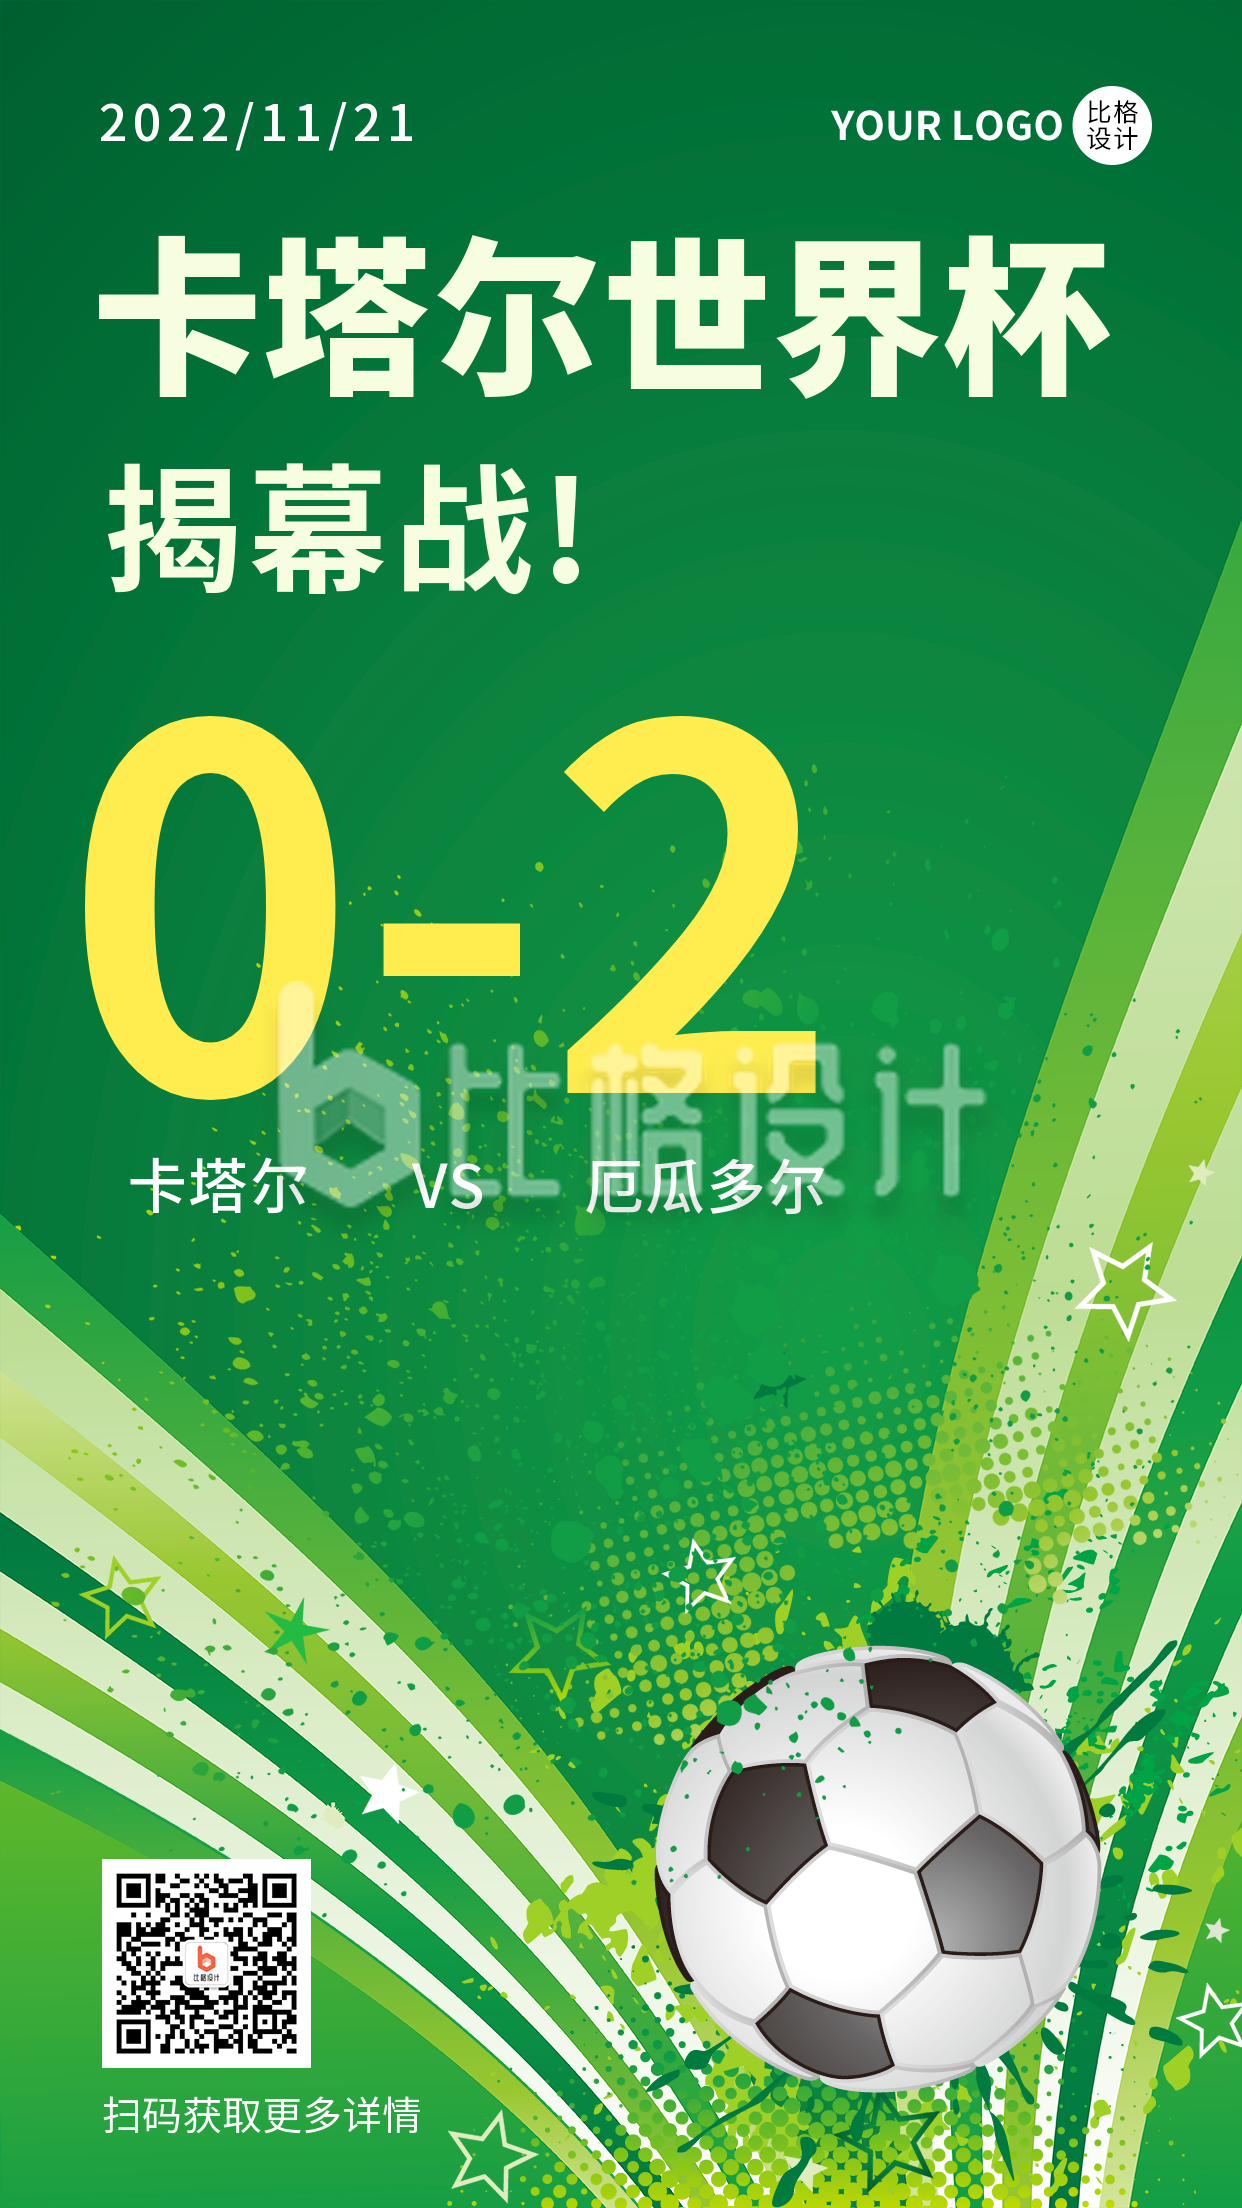 世界杯体育赛事活动宣传手机海报